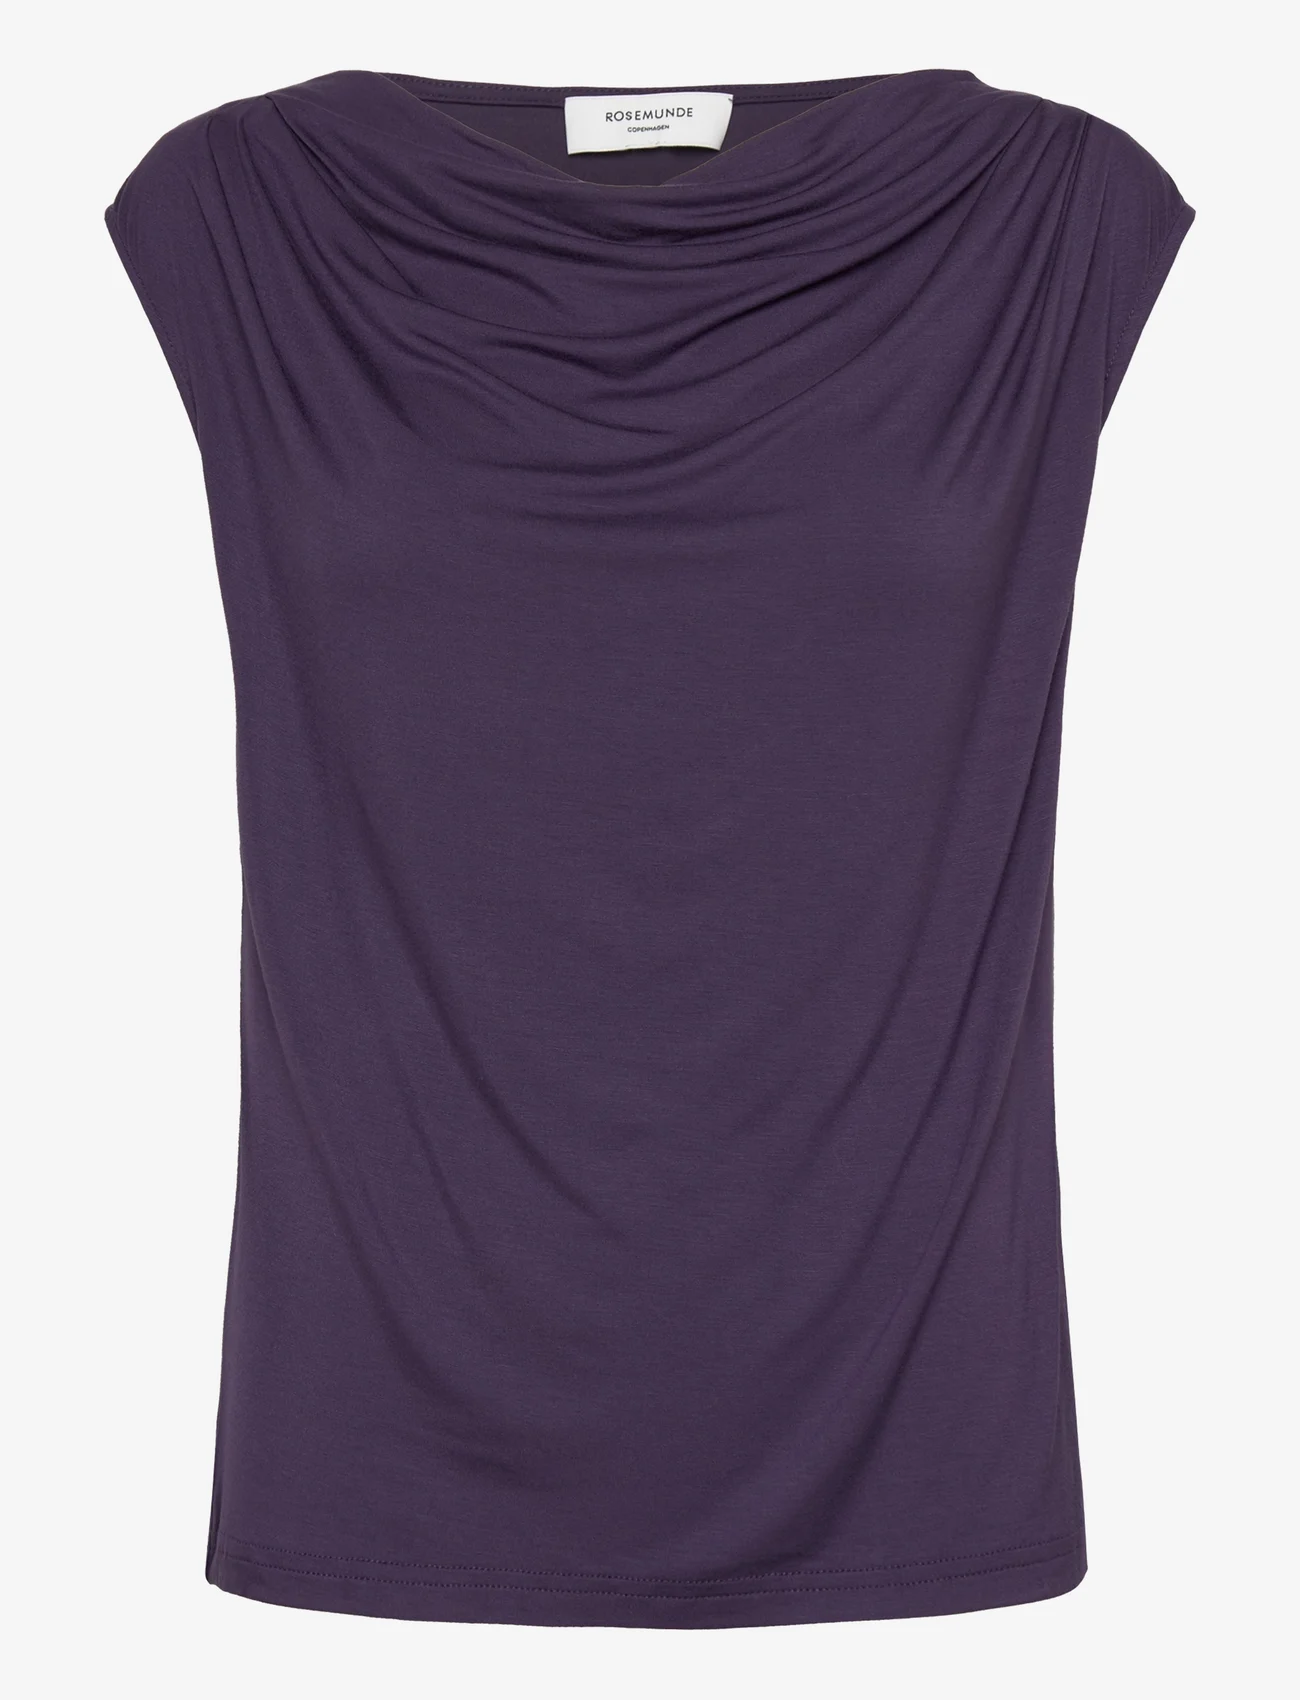 Rosemunde - Viscose t-shirt - laveste priser - purple velvet - 0